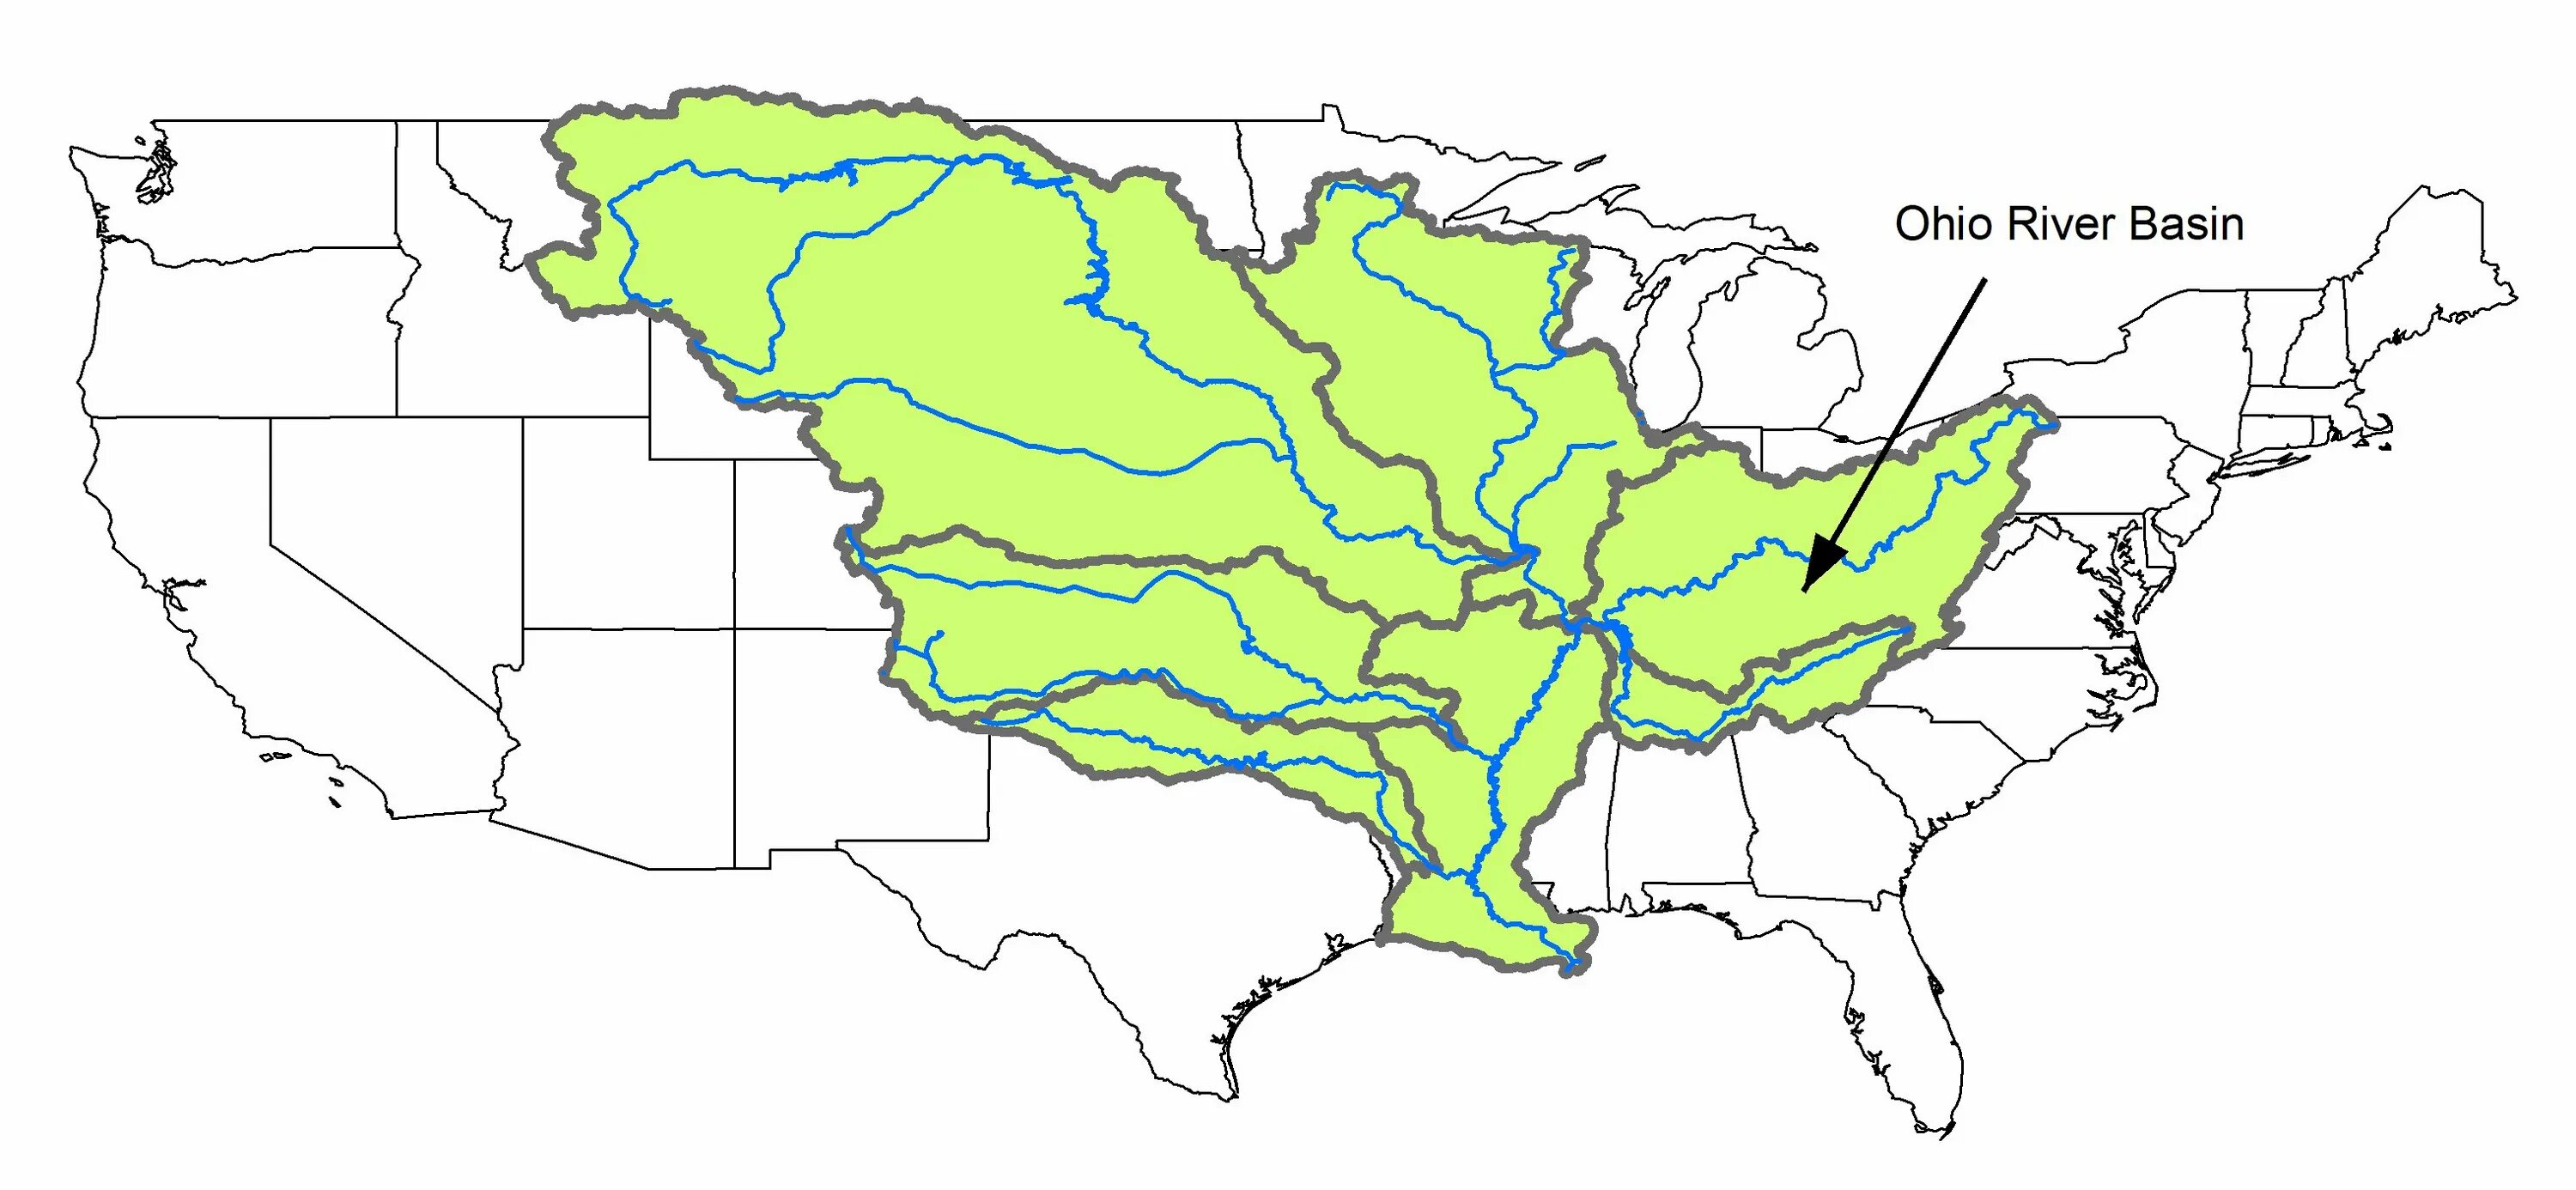 Миссисипи на карте. Бассейн реки Миссисипи на карте. Бассейн Миссисипи на карте. Река Миссисипи на карте. Границы бассейна реки Миссисипи.